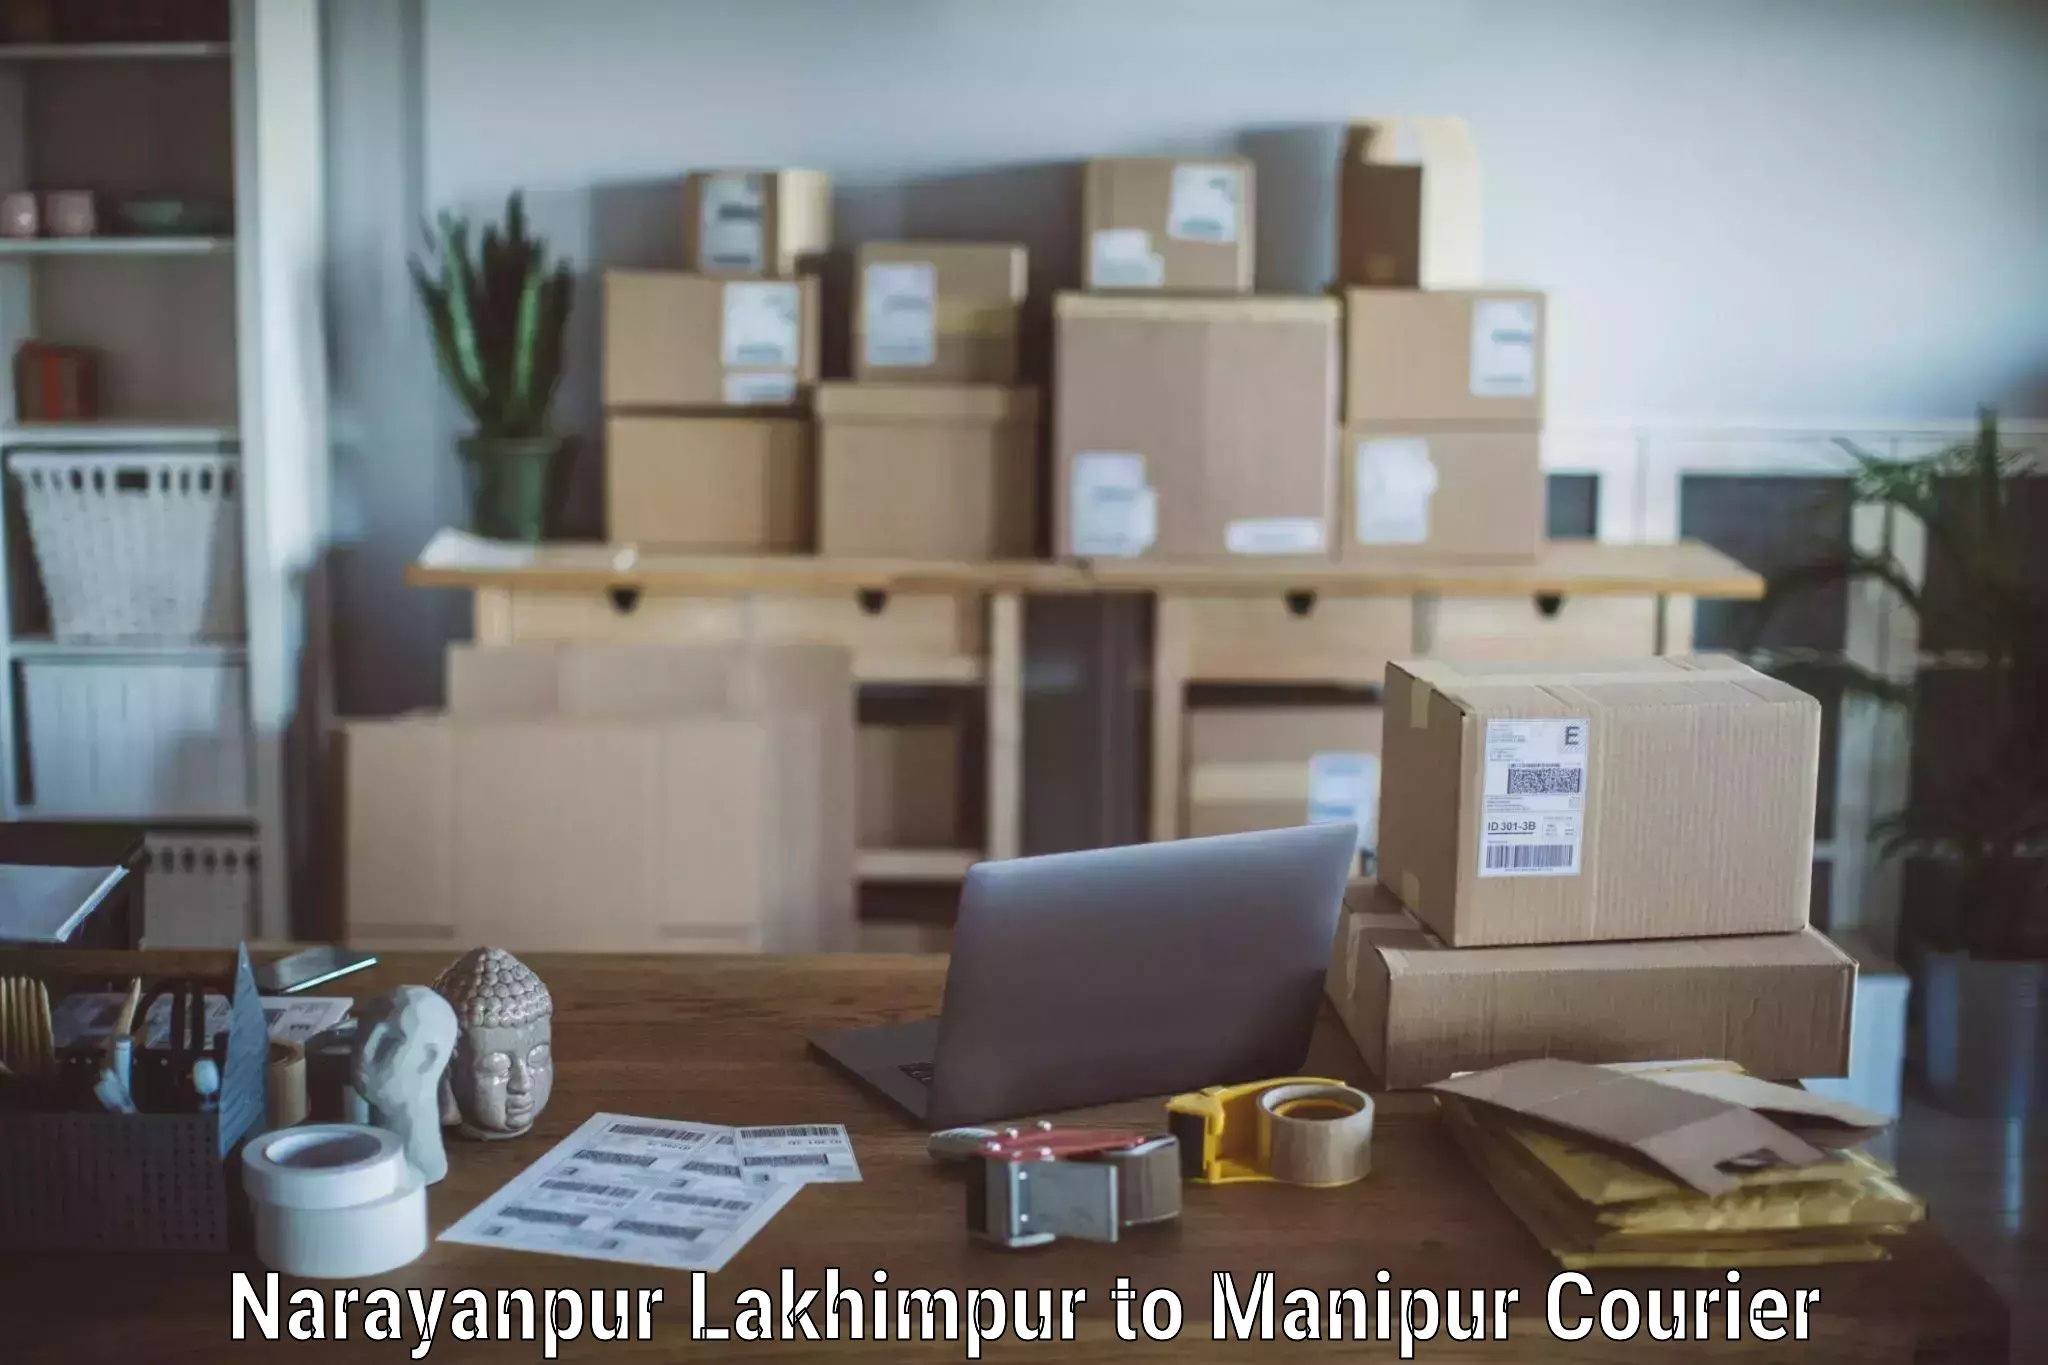 Furniture transport services Narayanpur Lakhimpur to Imphal